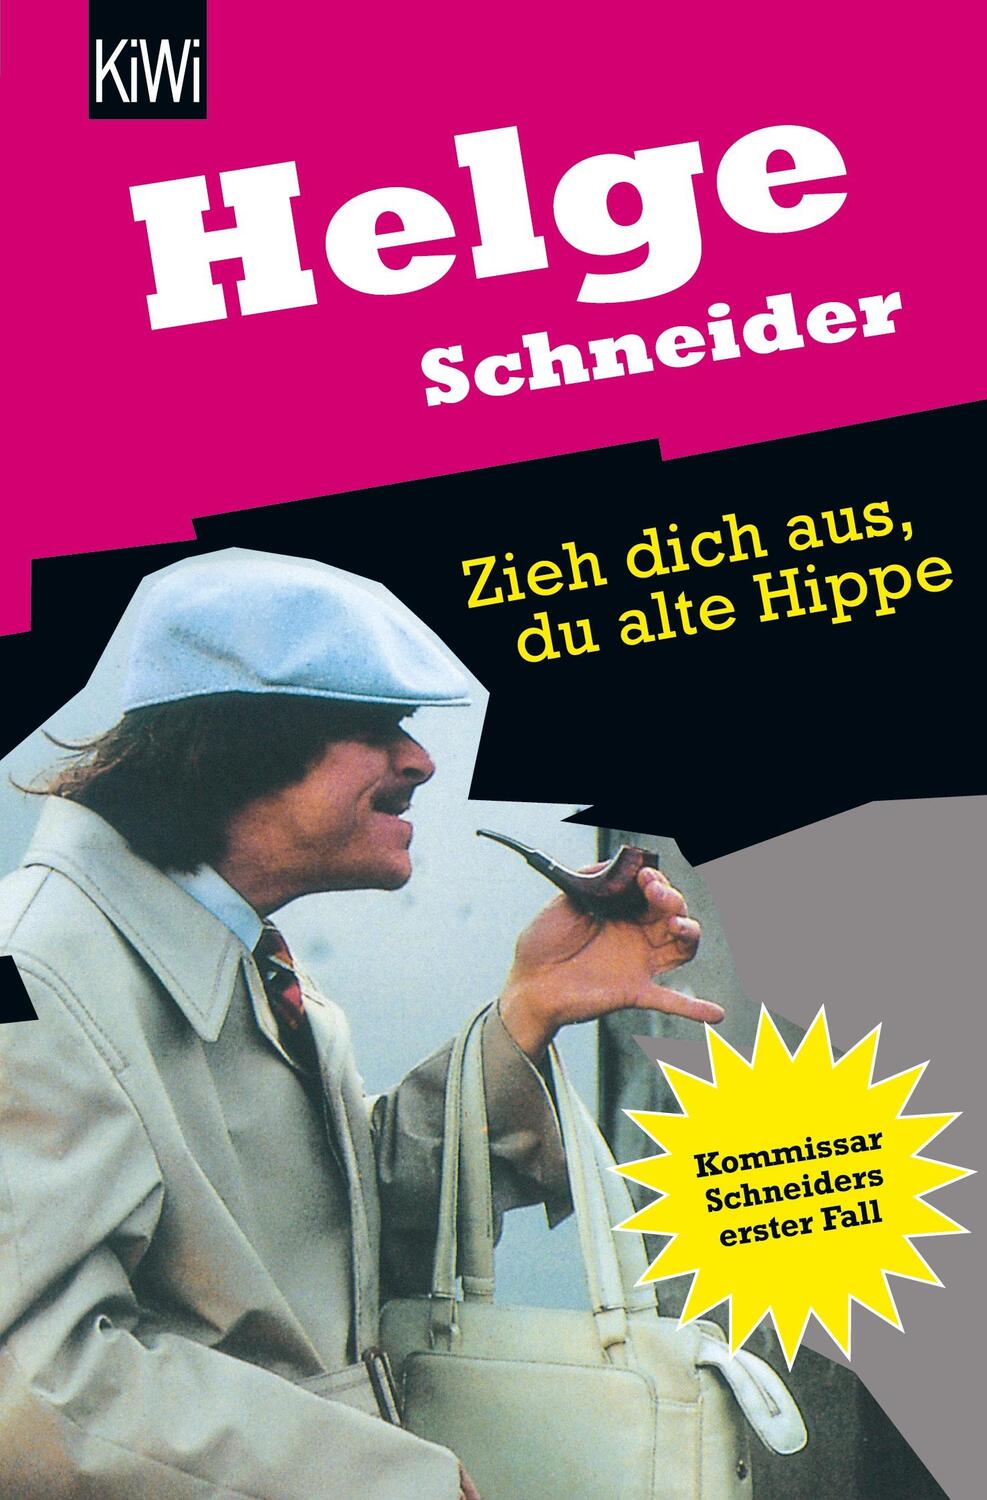 Zieh dich aus, du alte Hippe - Schneider, Helge